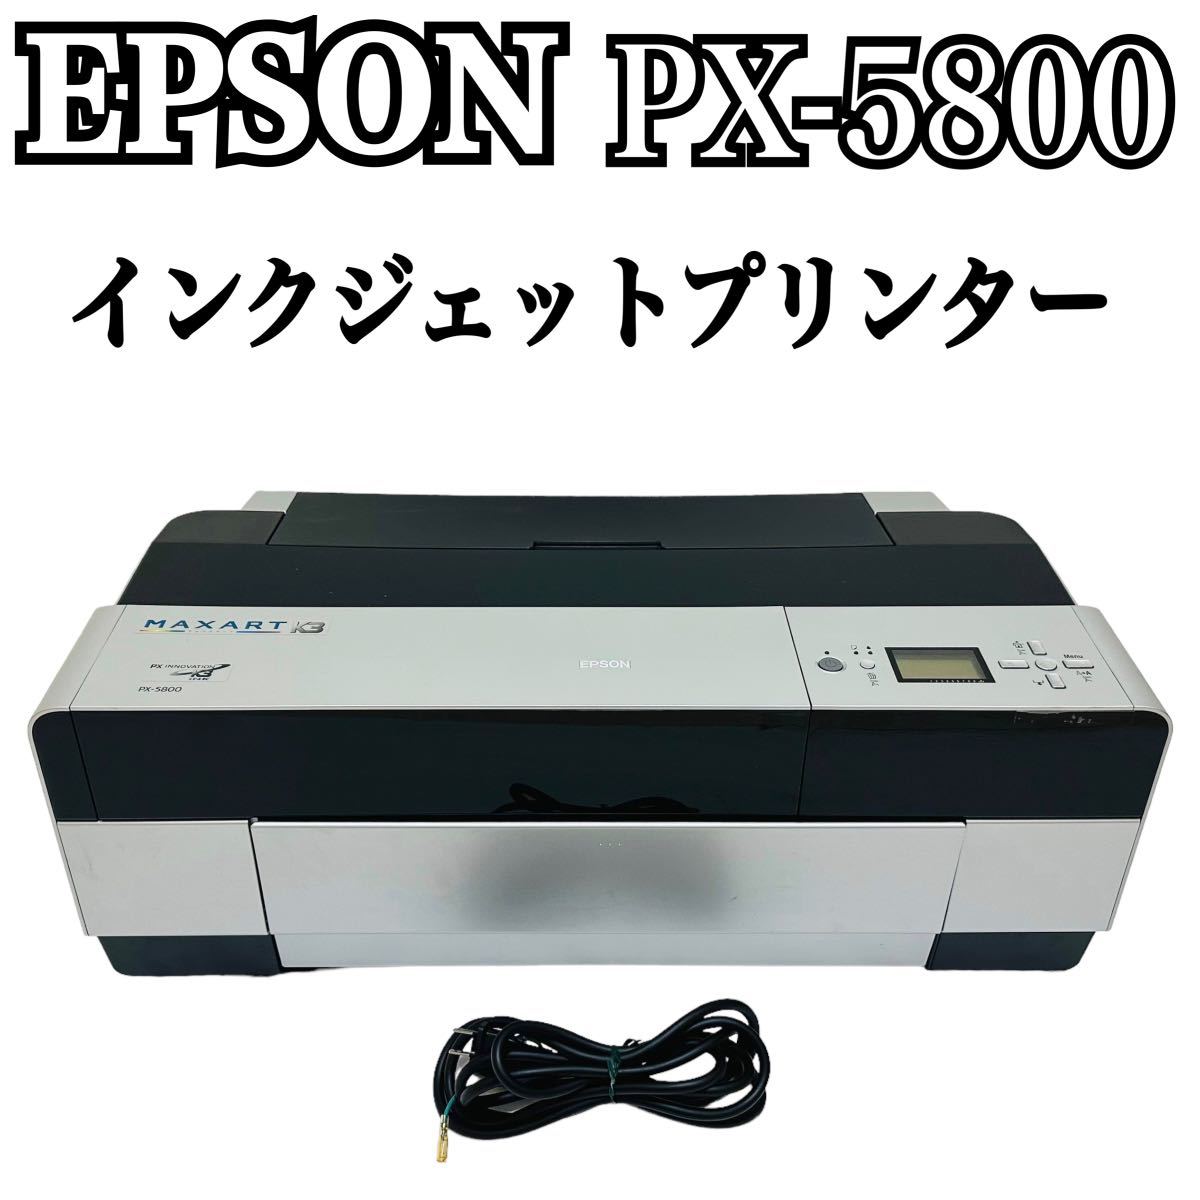 ドライバ ヤフオク! 希少品 EPSON 大判プリンター PX-5800 - 未使用品